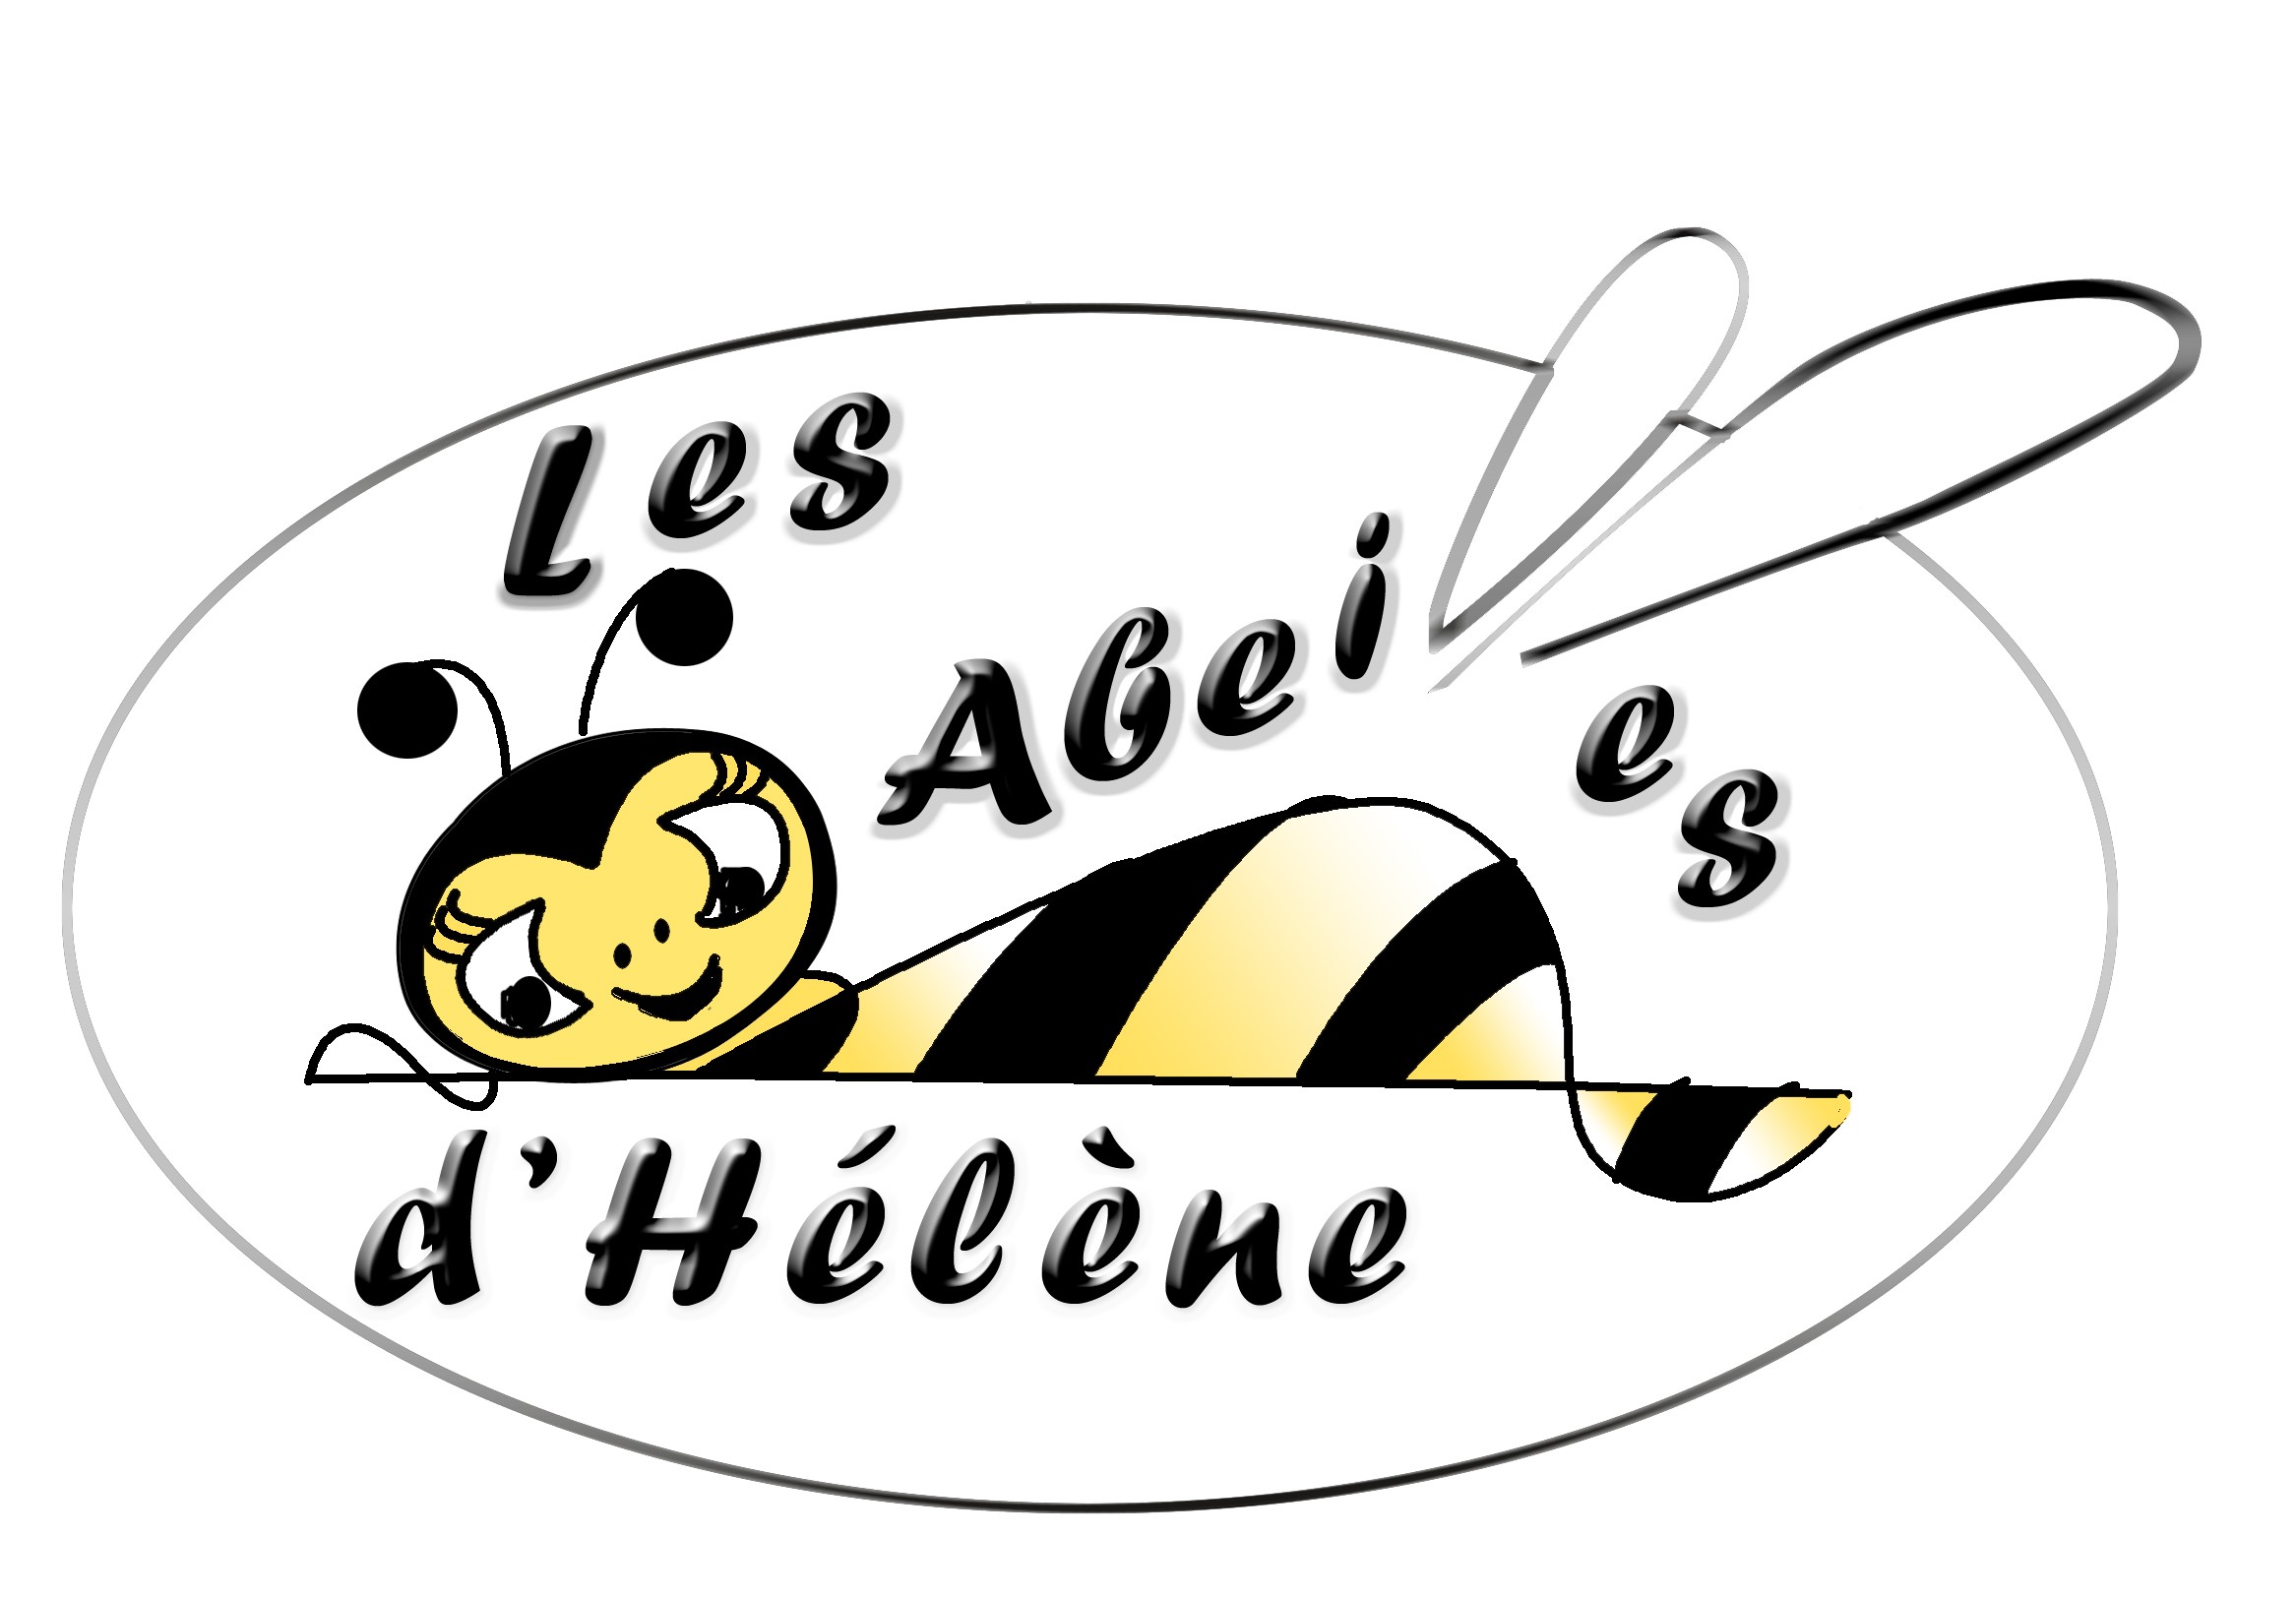 Les abeilles d'hélène